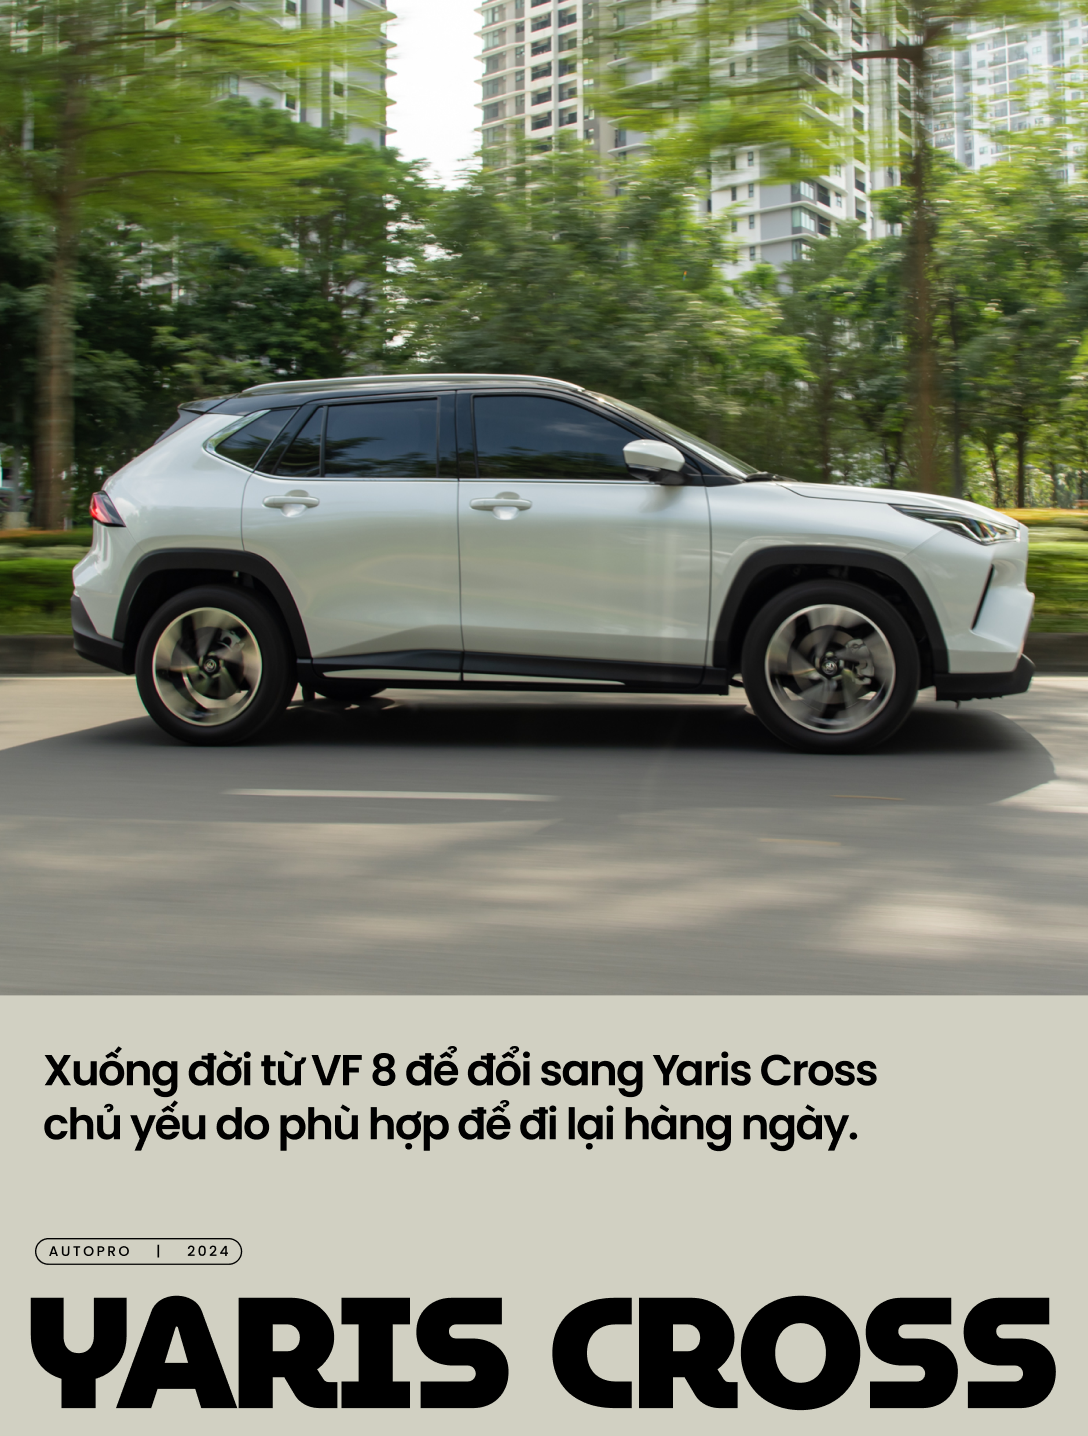 Fan công nghệ bán VinFast VF 8 mua Toyota Yaris Cross: ‘Cần xe nhỏ cho tiện dù còn vài điểm trừ nhưng được cái full an toàn’- Ảnh 1.